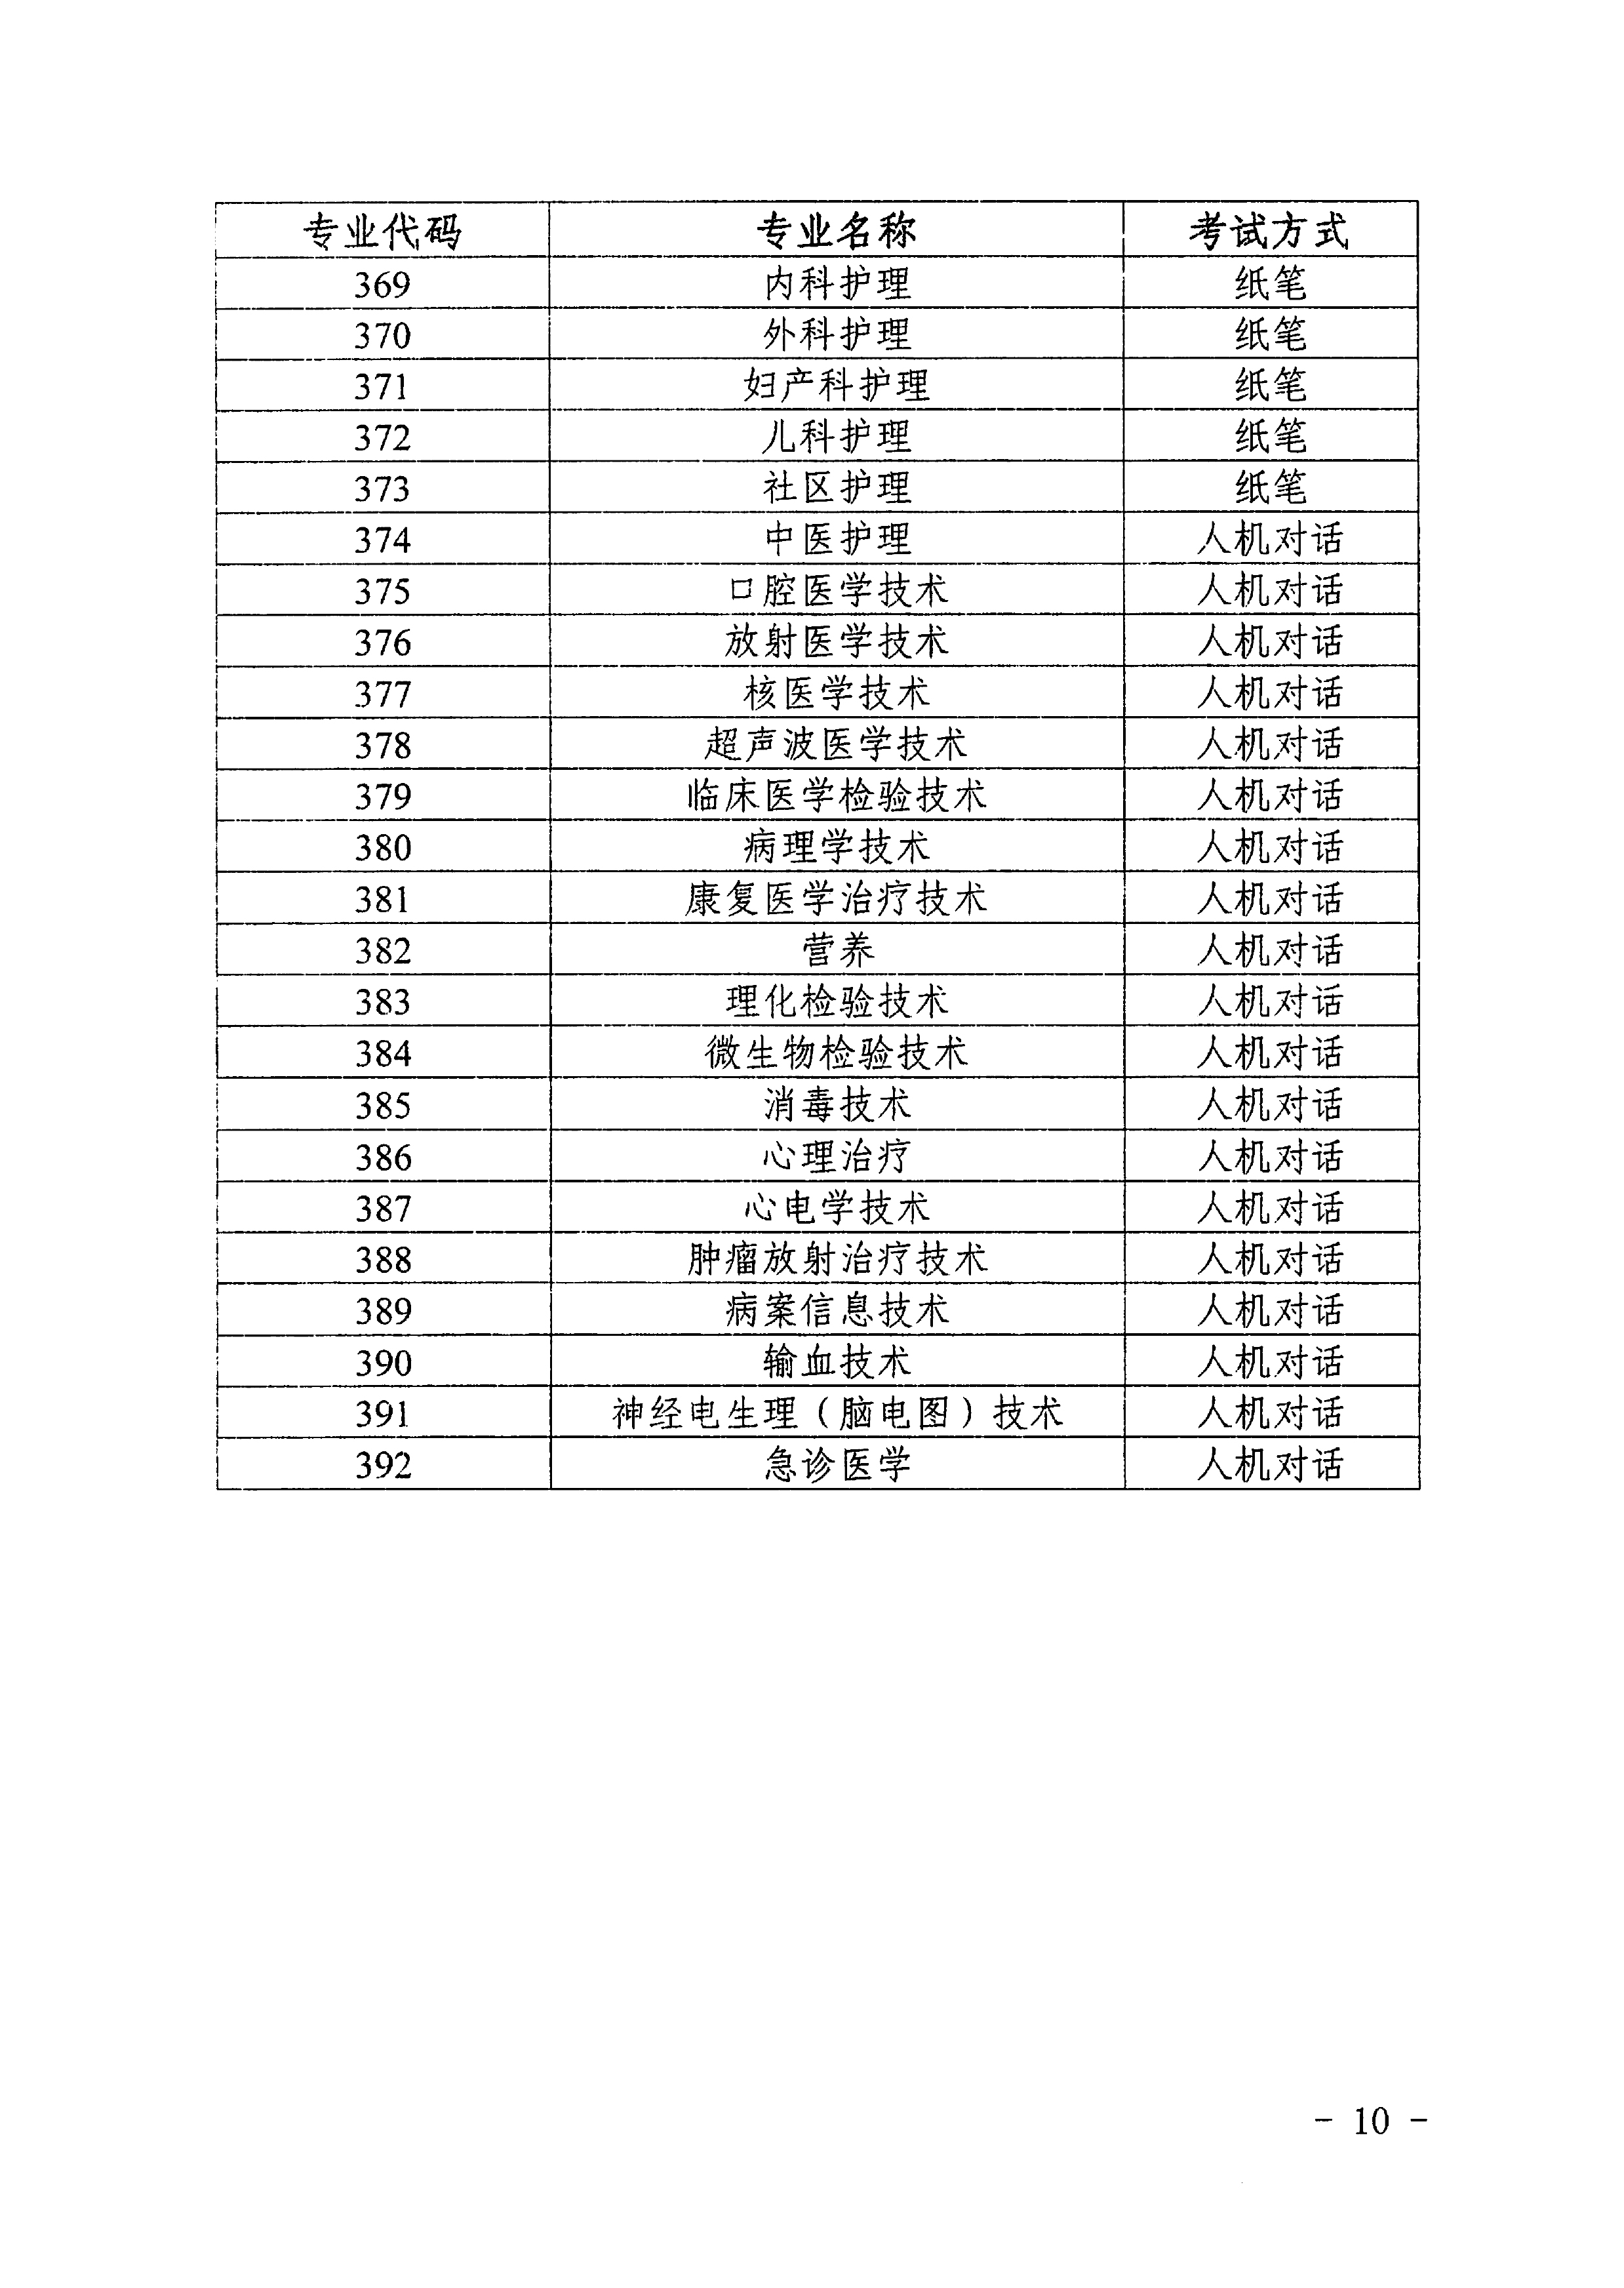 海南省2019年卫生专业技术资格考试通知